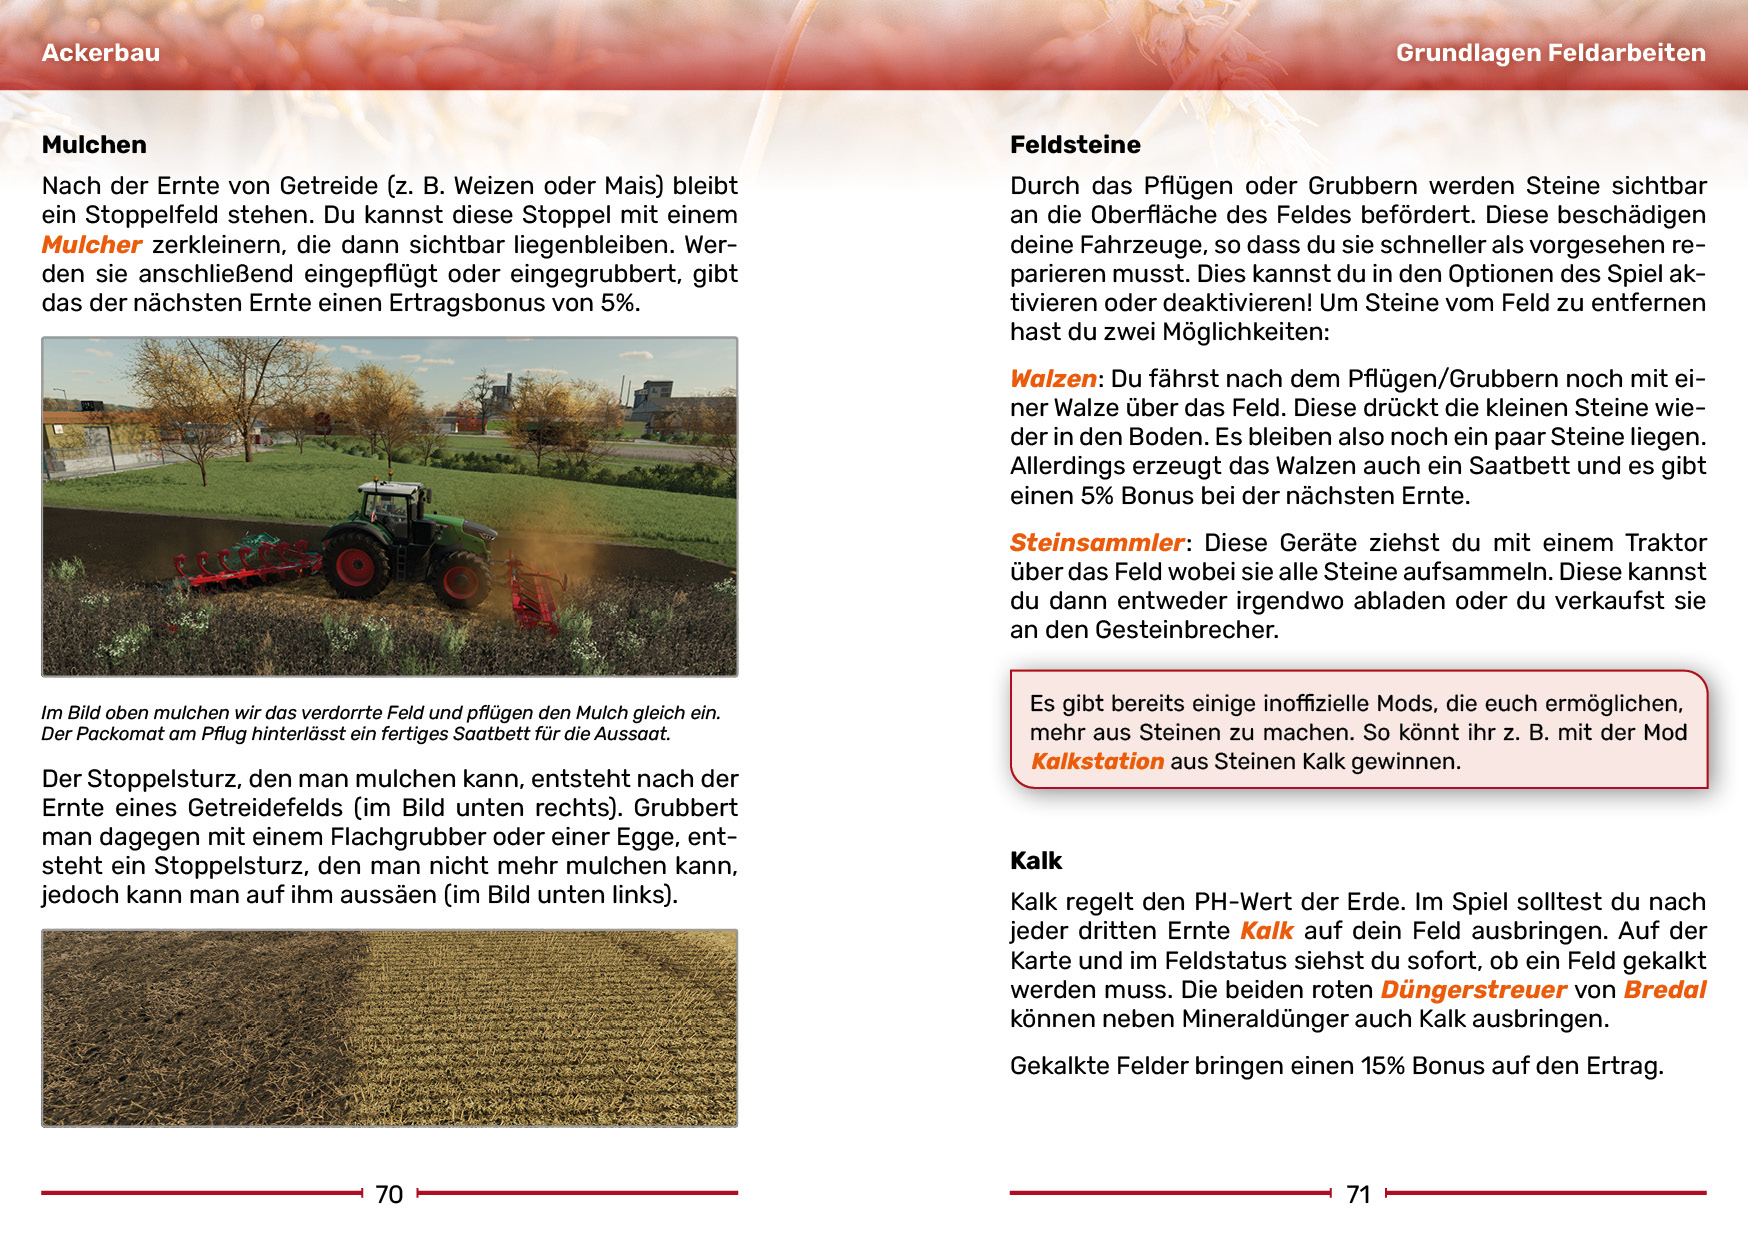 Landwirtschaftssimulator 22 - Der inoffizielle Guide (kartoniertes Buch)